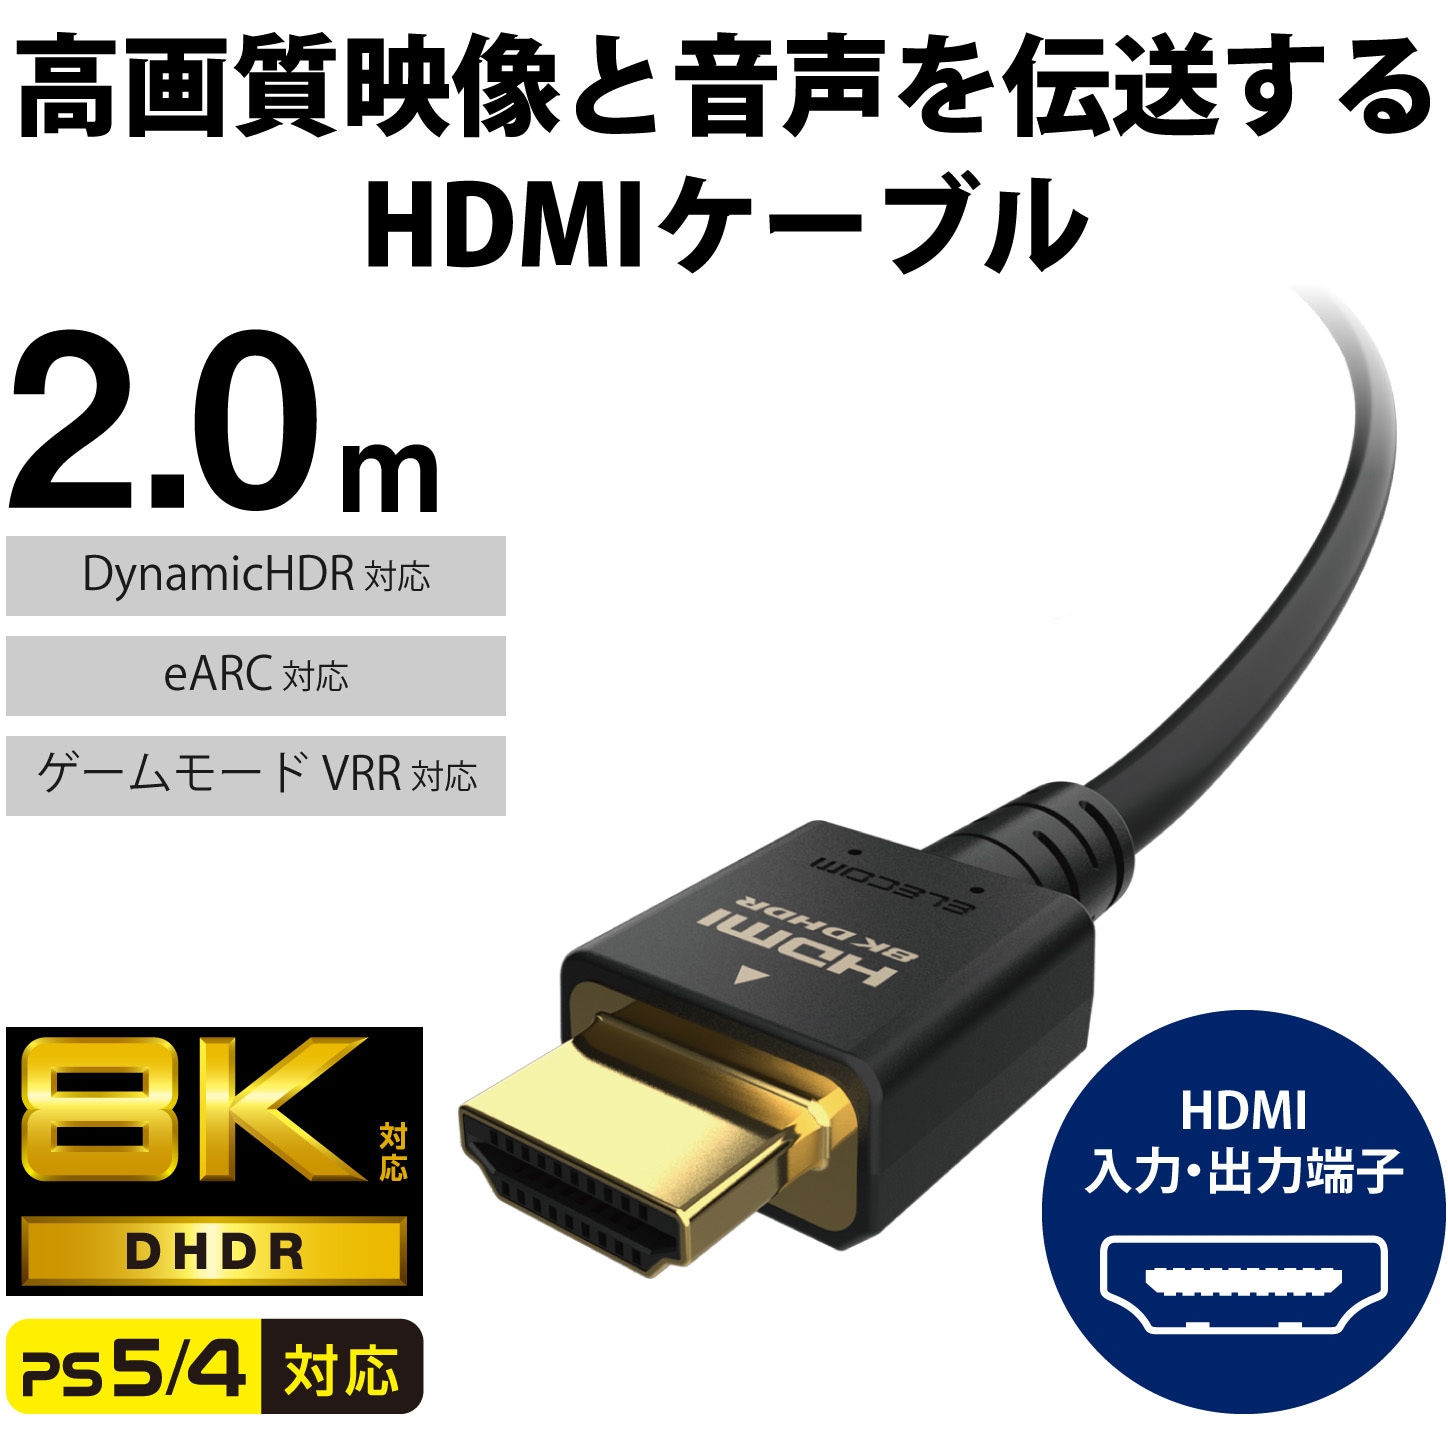 HDMI TO ケーブル 訳あり ケーブル長 2m ハイスピードタイプ